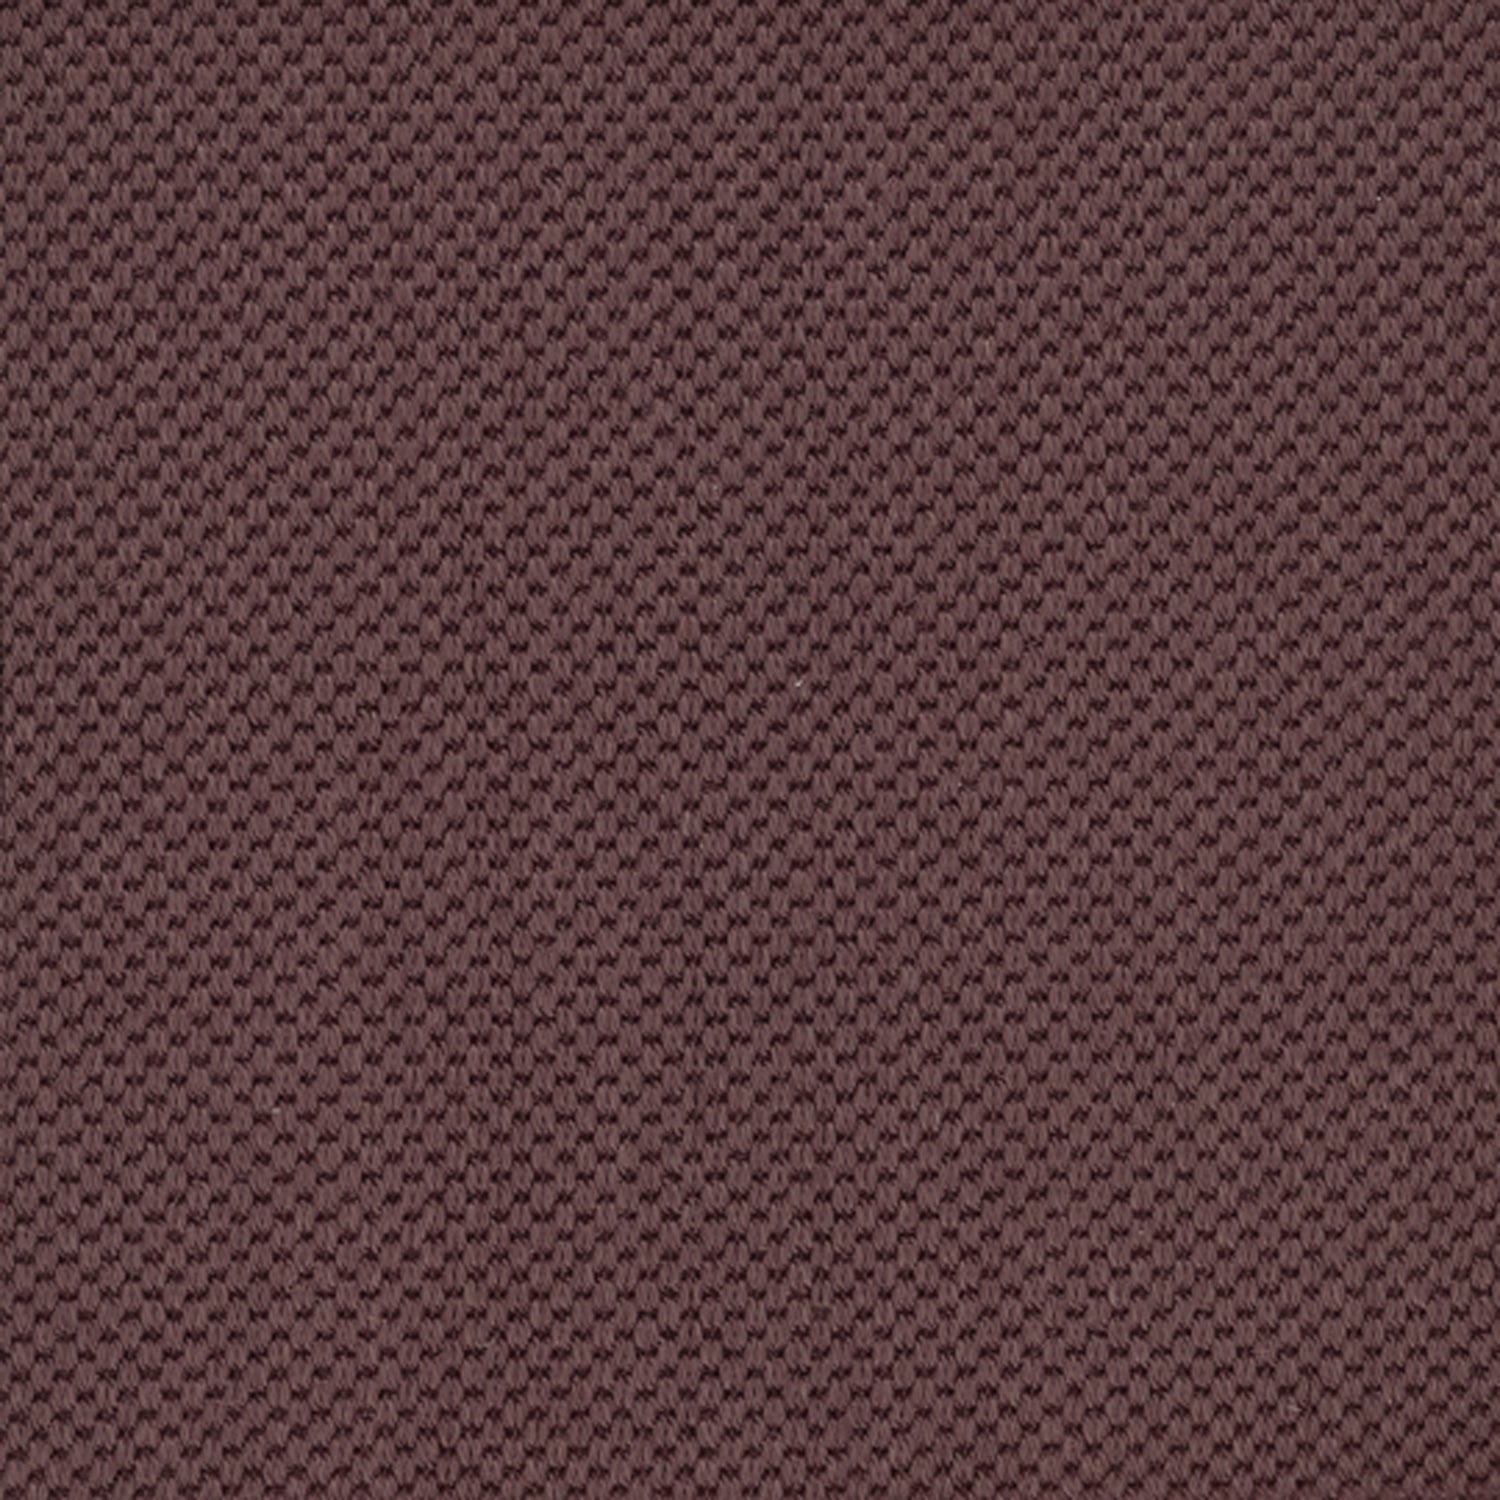 Sisal broadloom carpet swatch in a flat grid weave in "Temptation" maroon.